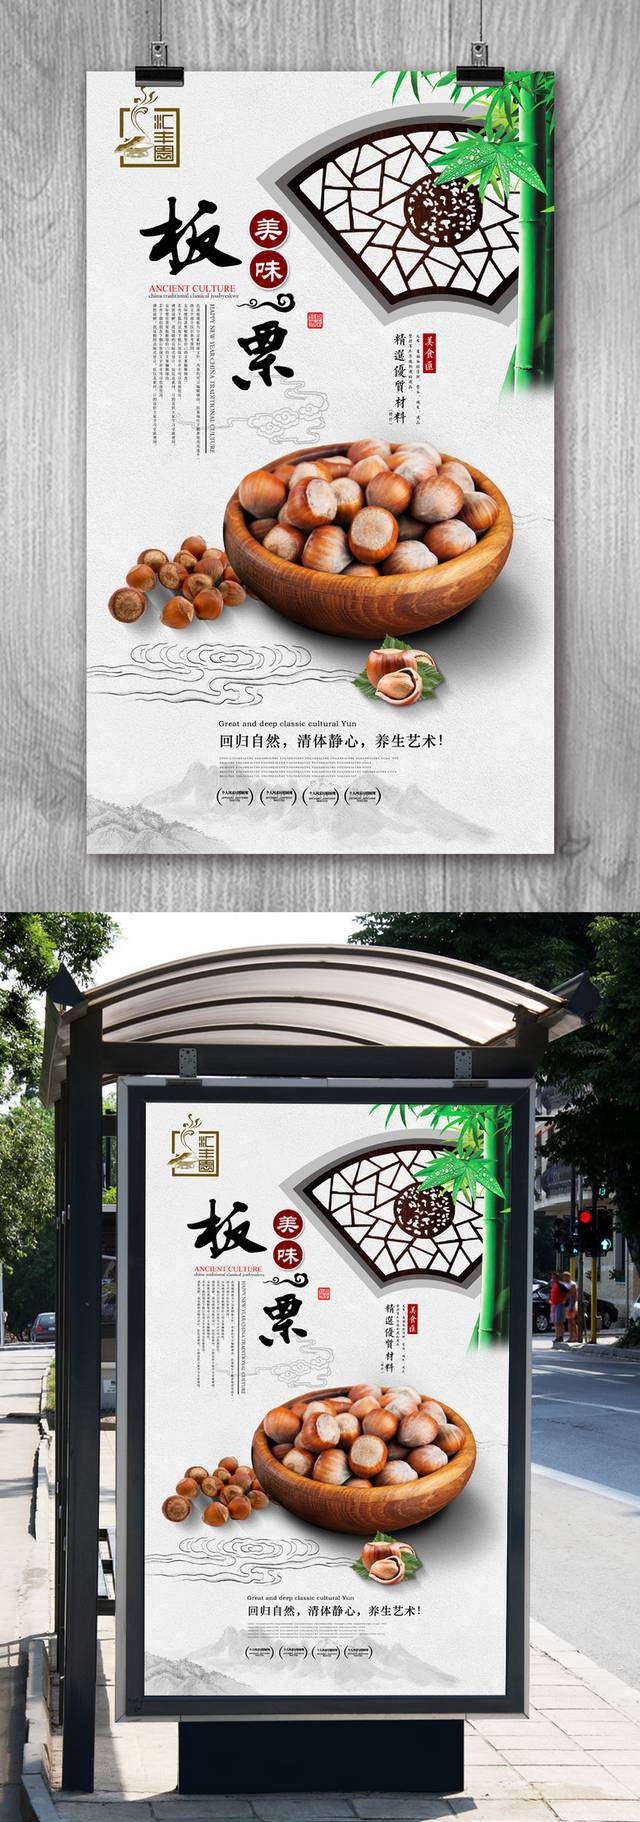 中式板栗坚果宣传海报设计